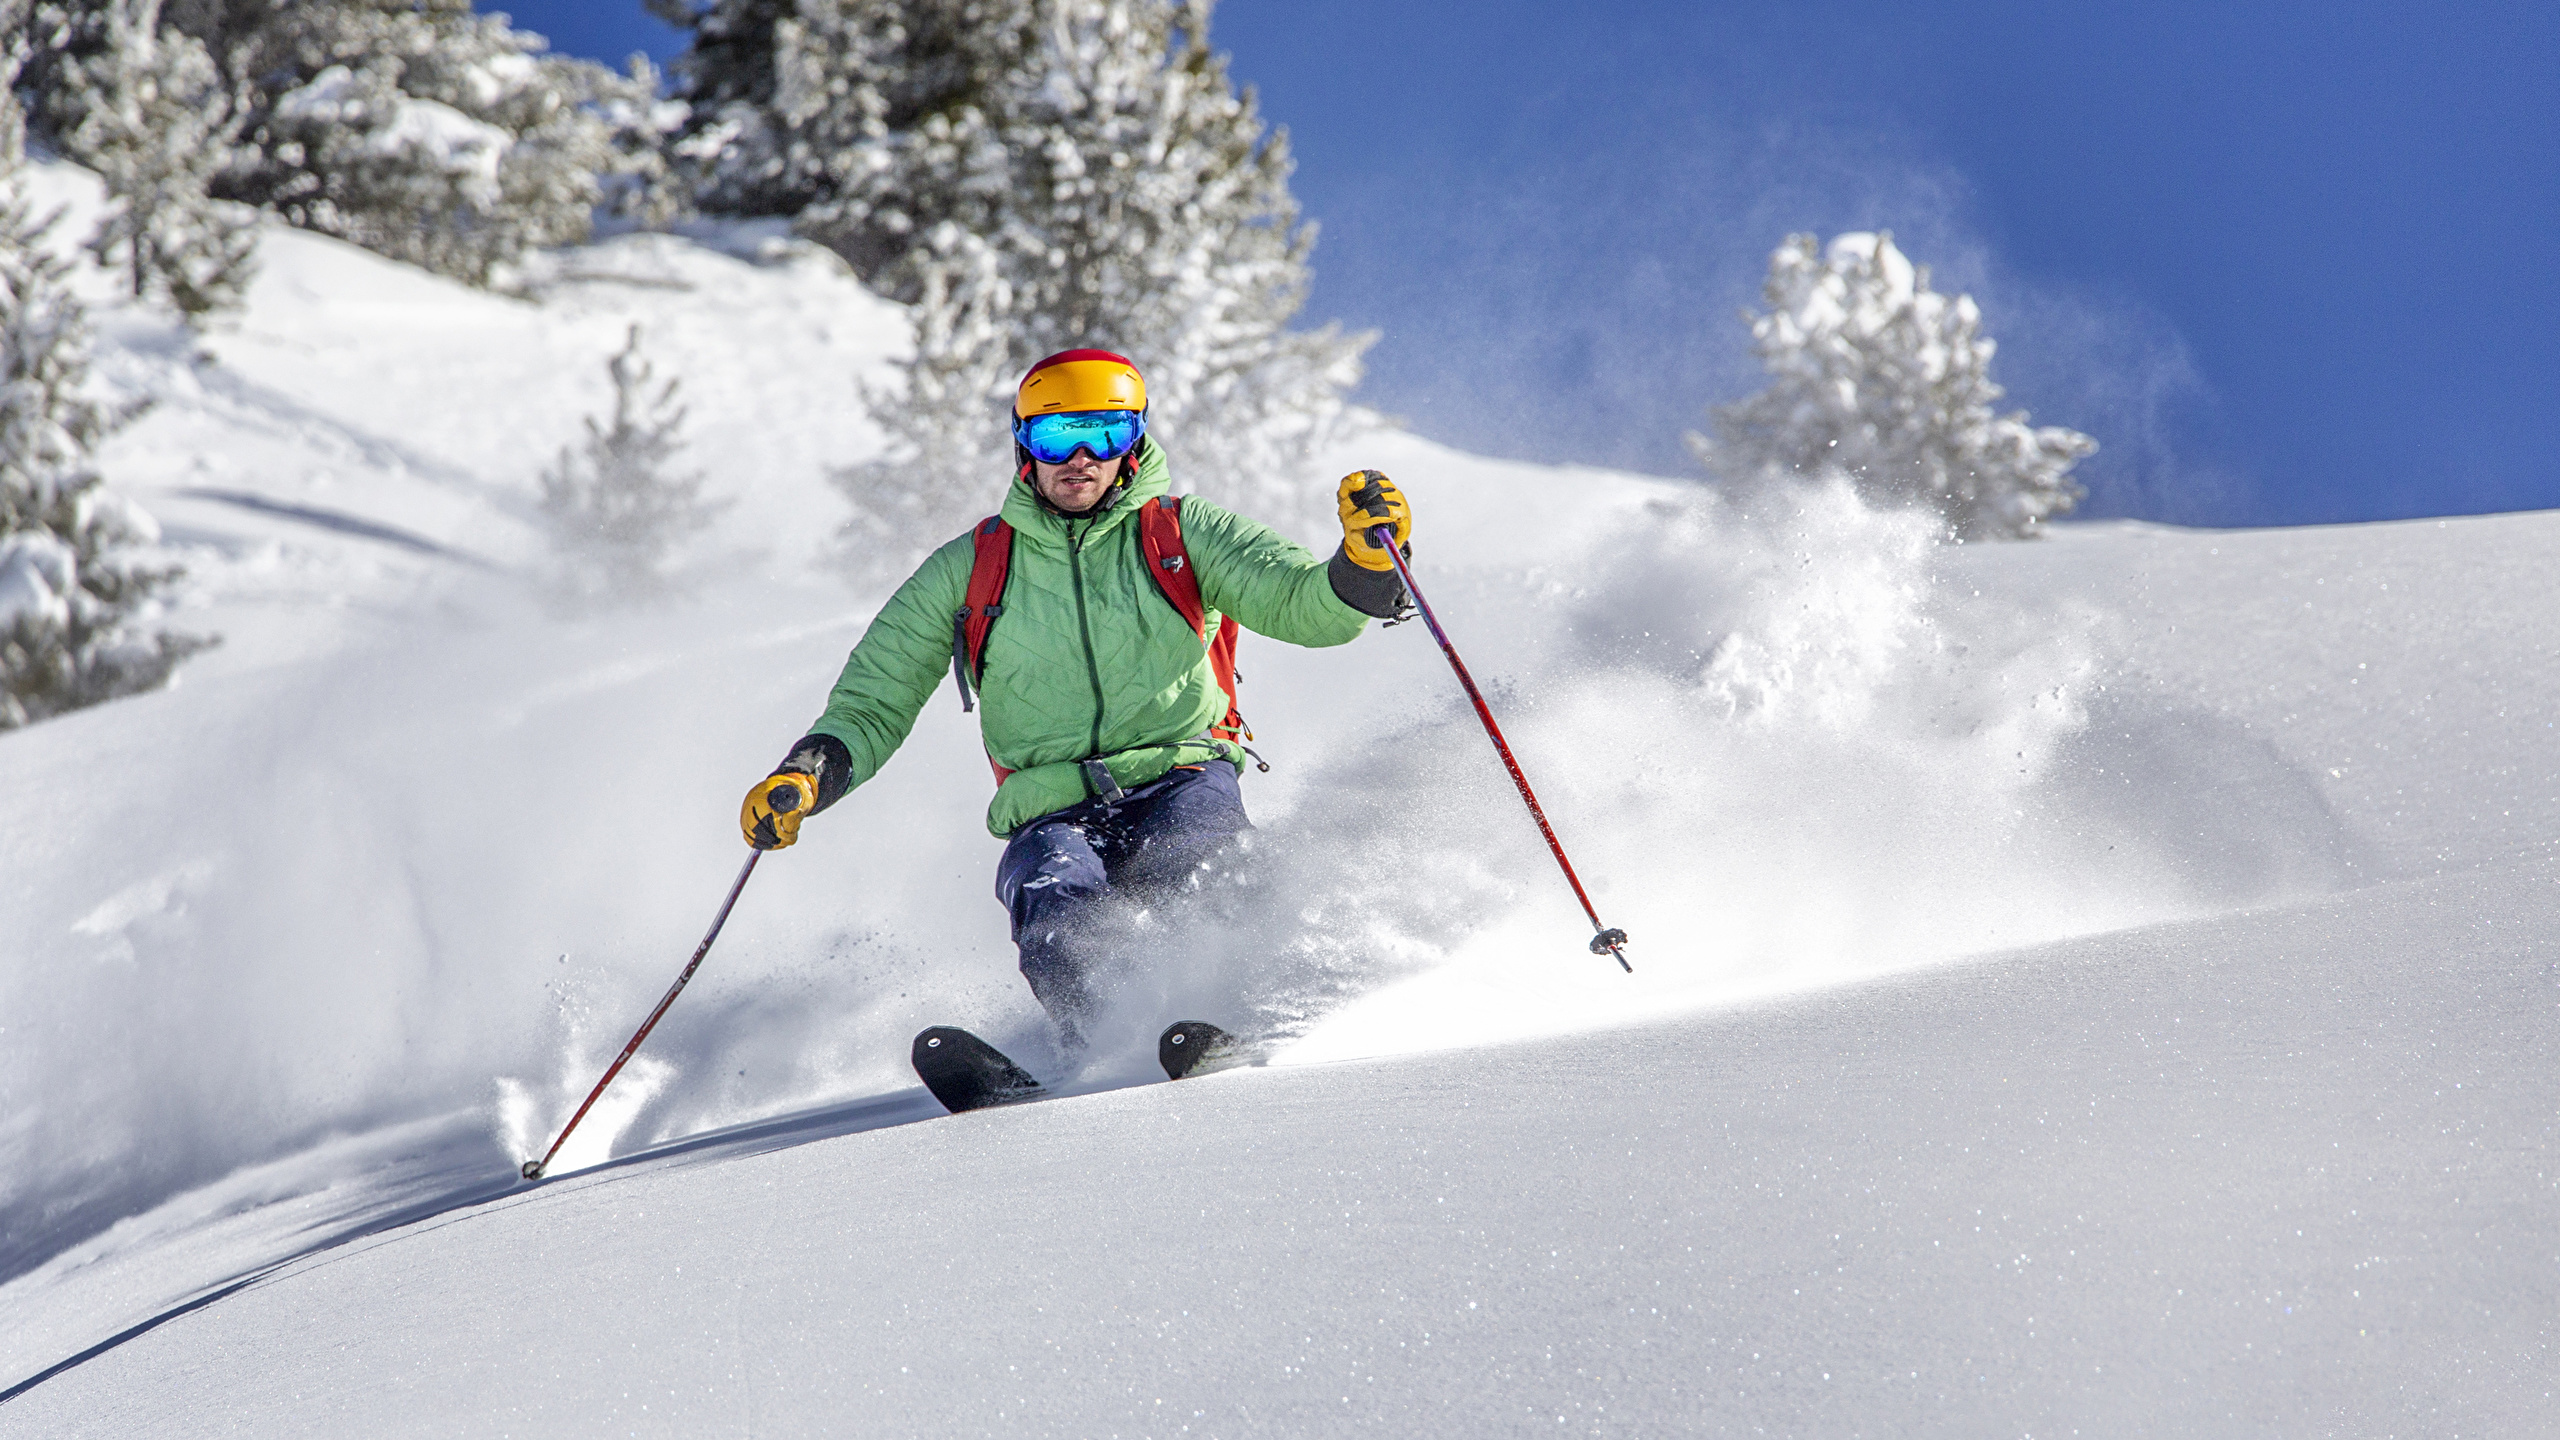 壁紙 2560x1440 冬 スキー 男性 雪 スポーツ ダウンロード 写真